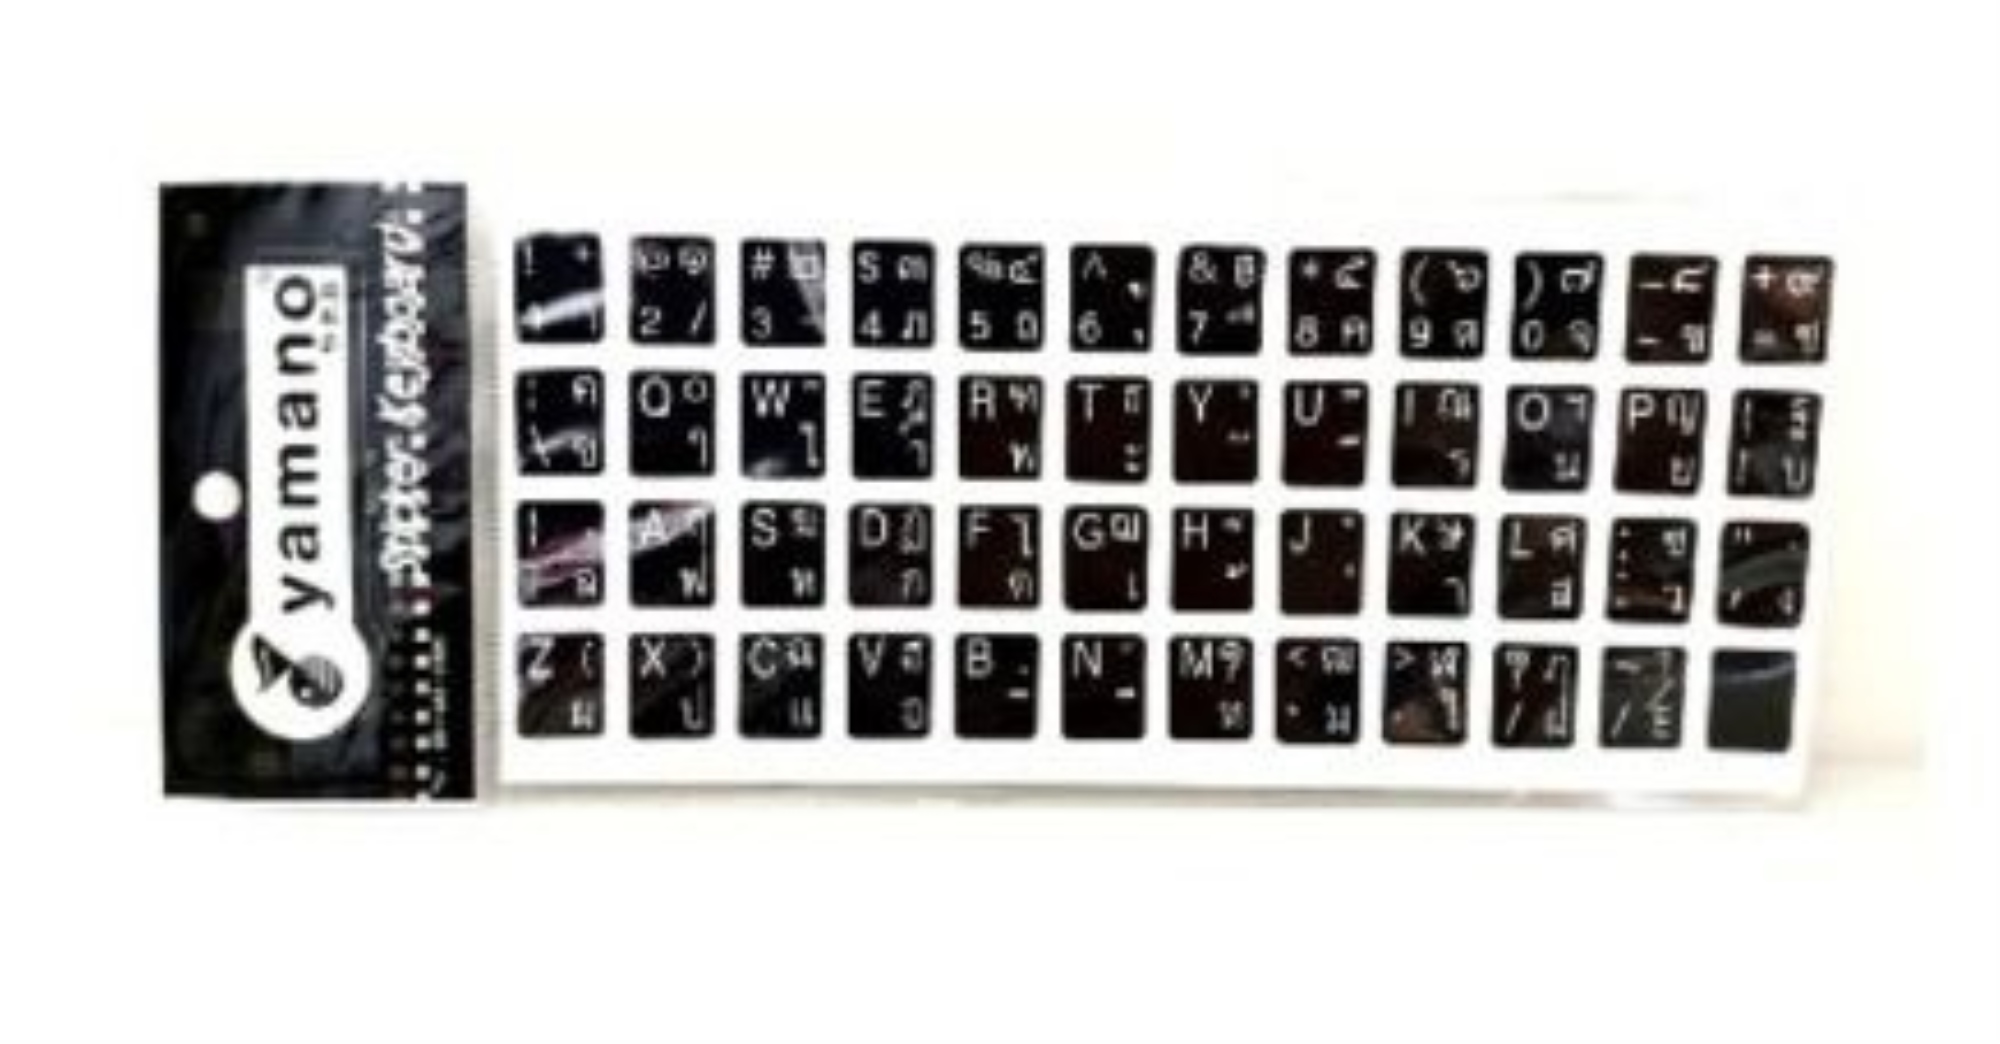 yamano Sticker Keyboard